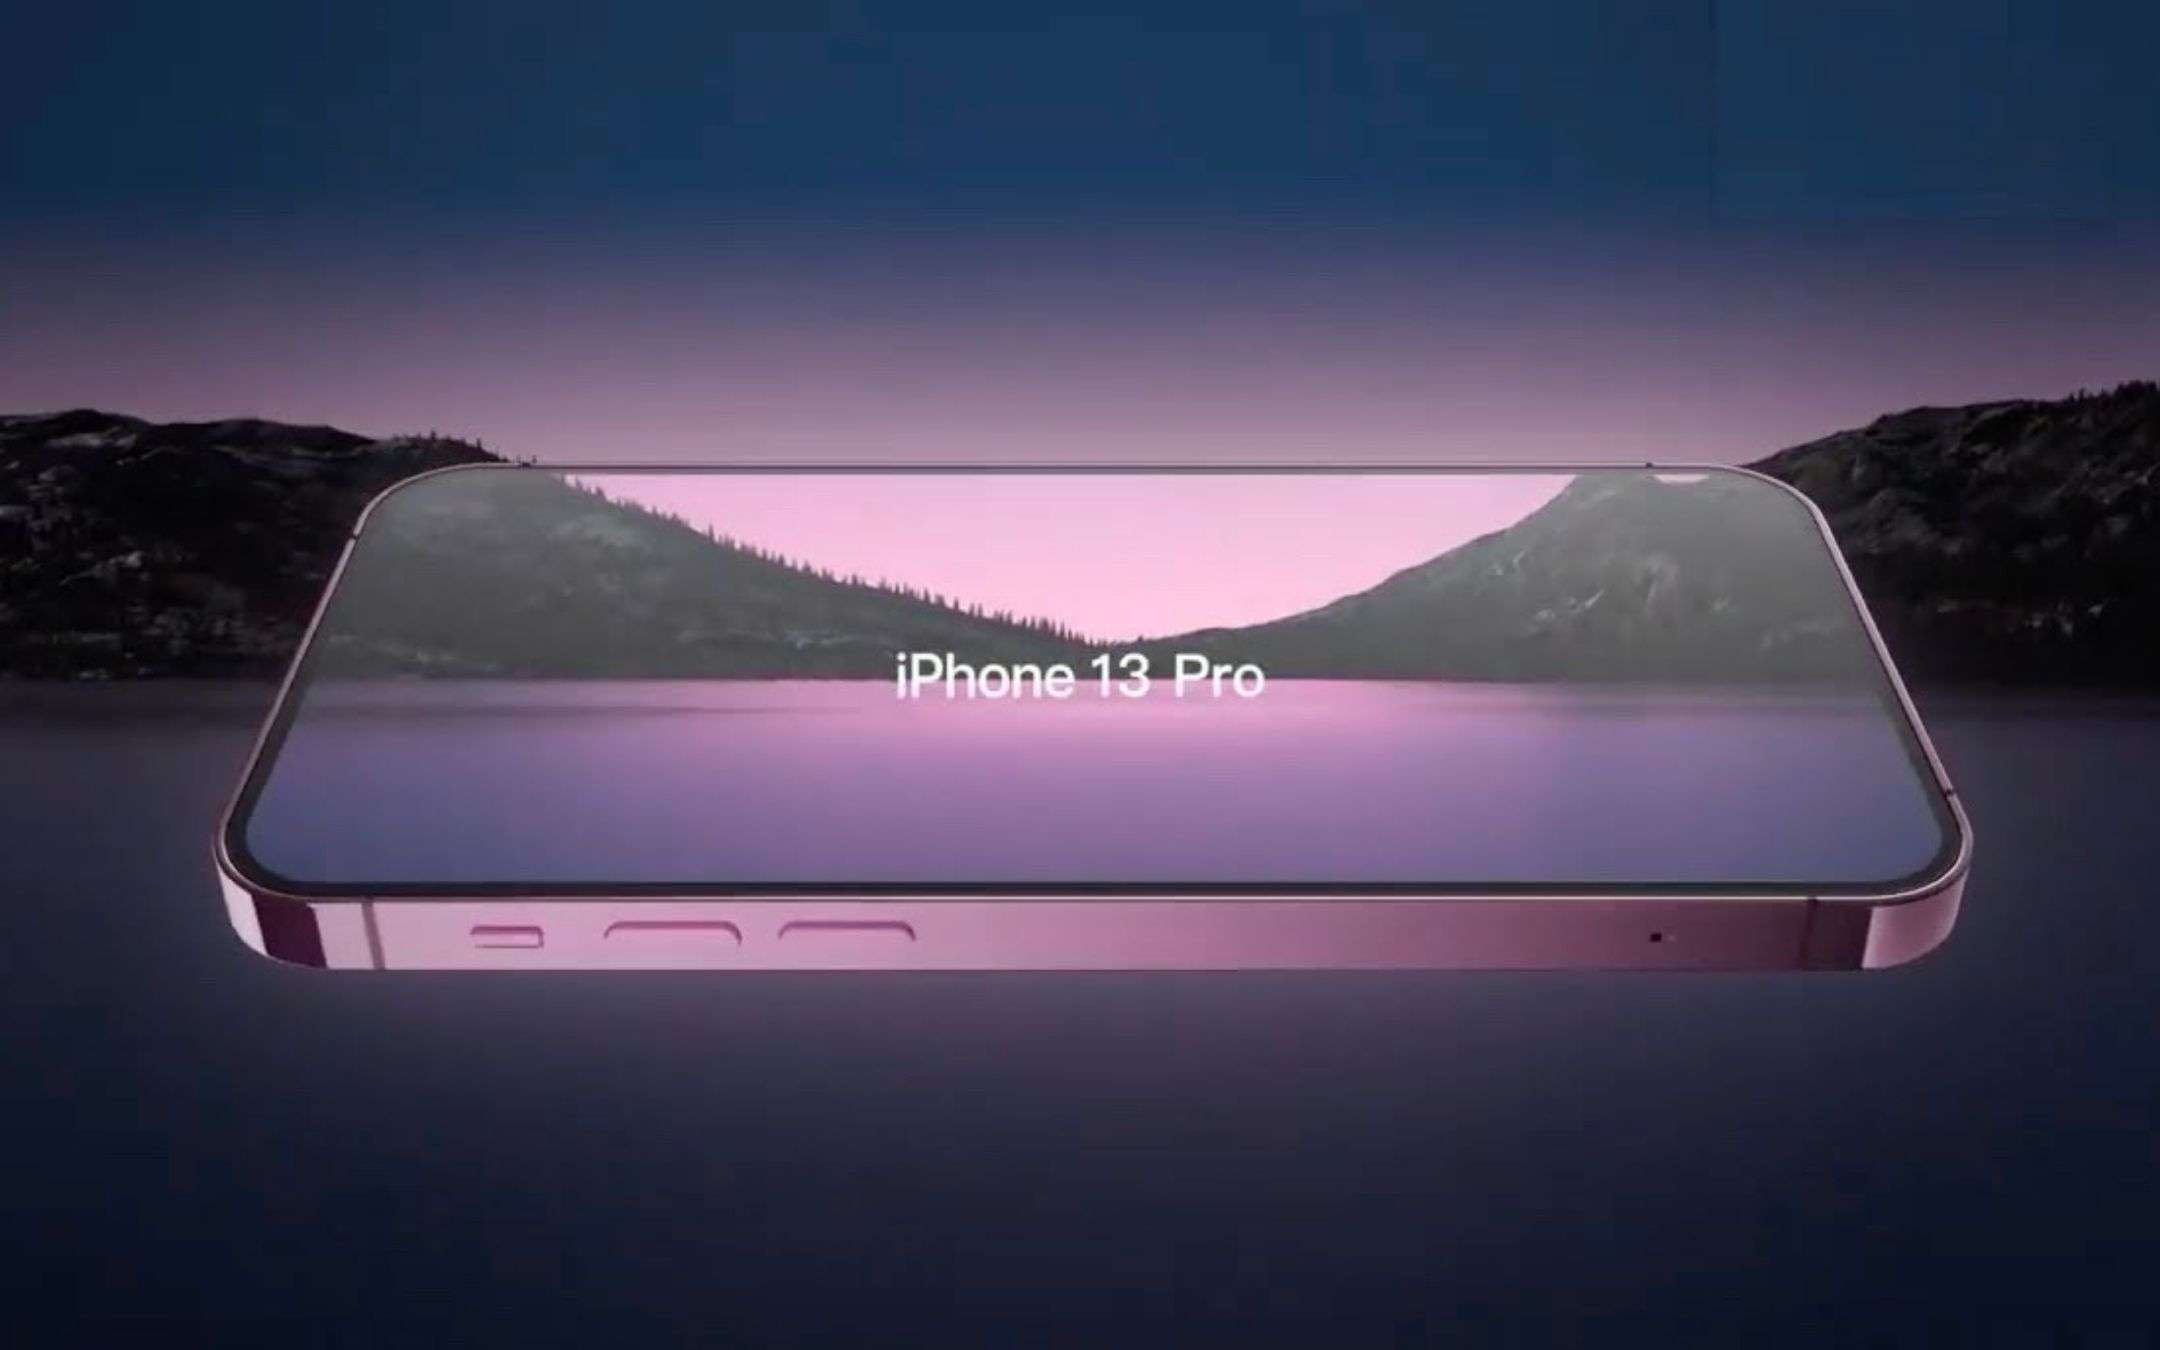 iPhone 13 Pro e Pro Max: video teaser MOZZAFIATO pre lancio